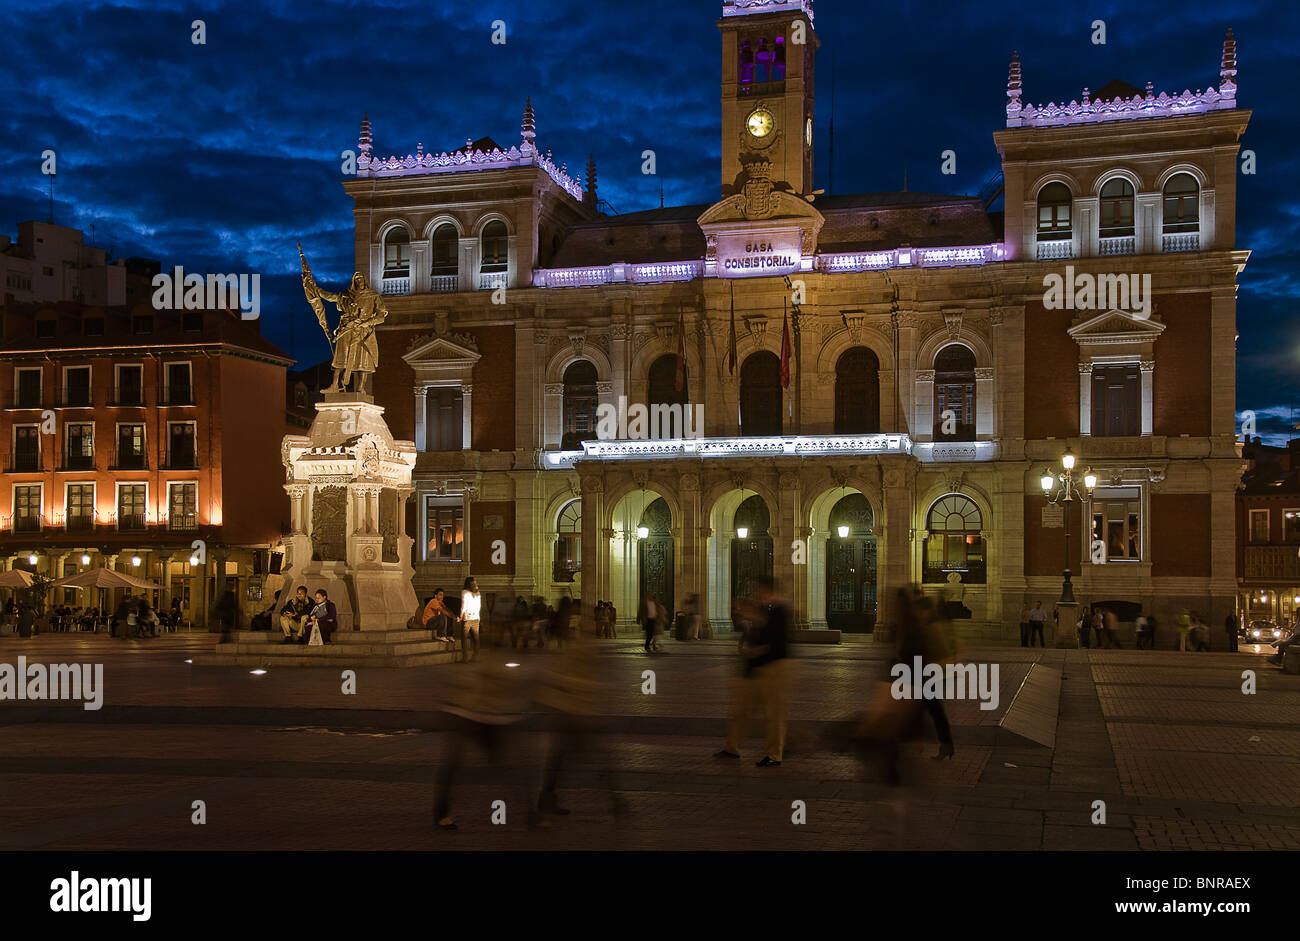 Hôtel de ville, le style éclectique de l'édifice du xixe siècle, dans la Plaza Mayor de la ville de Valladolid, Castille et Leon, Espagne. Banque D'Images